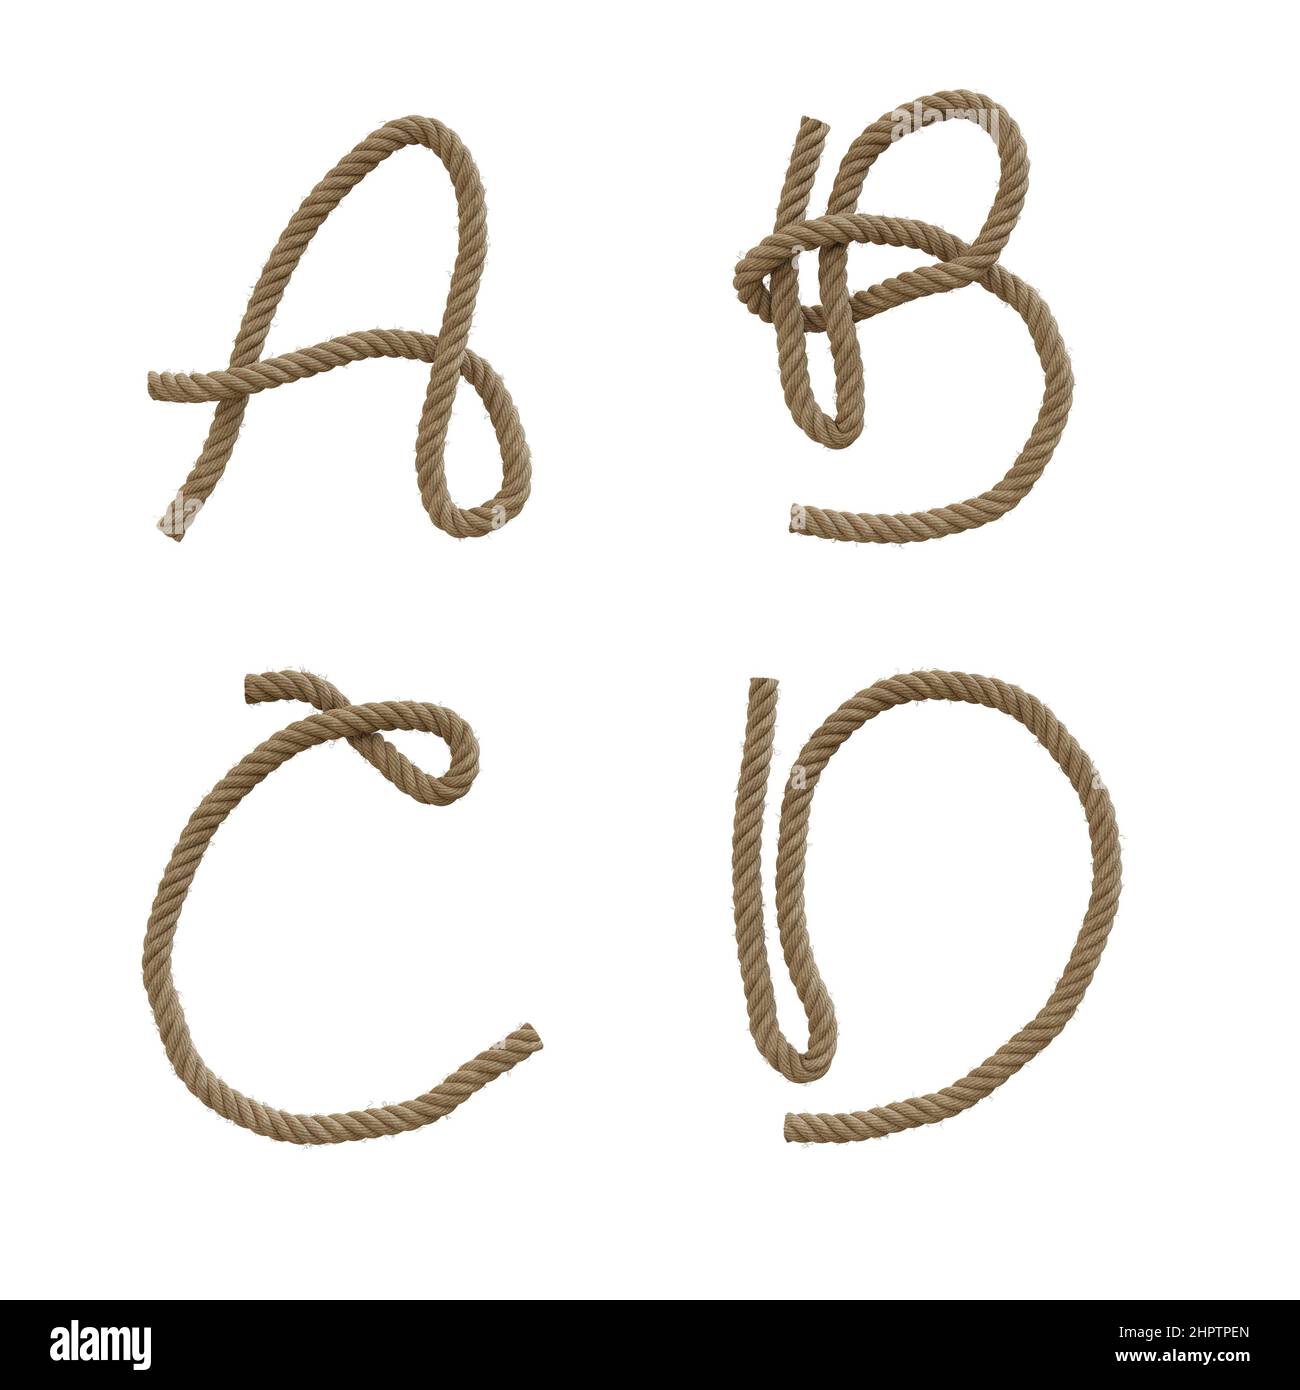 3D Darstellung von Hanfseil Großbuchstaben Alphabet - Buchstaben A-D Stockfoto